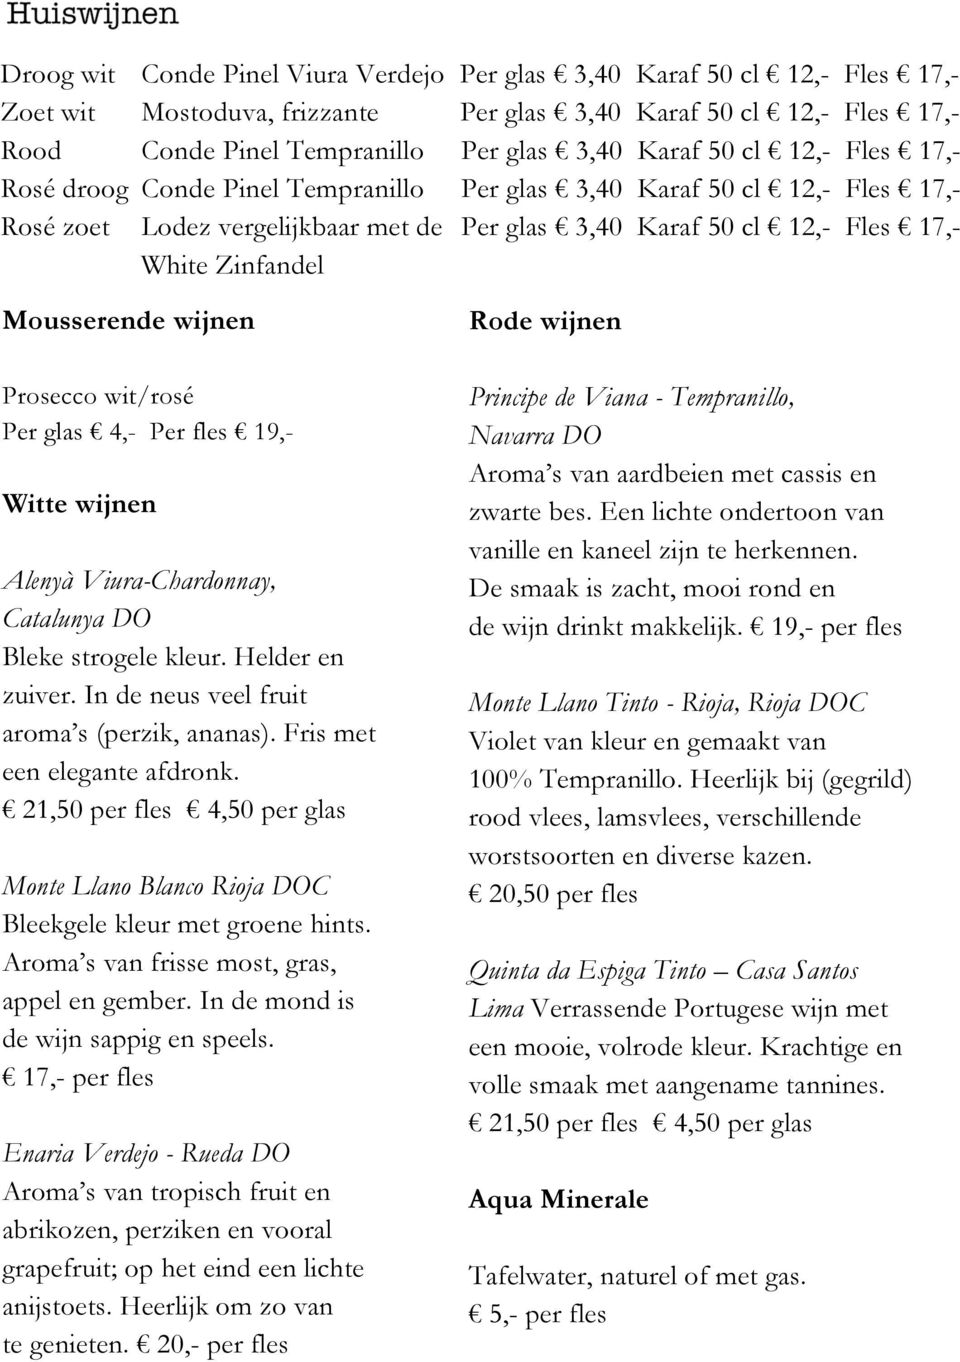 wijnen Prosecco wit/rosé Per glas 4,- Per fles 19,- Witte wijnen Alenyà Viura-Chardonnay, Catalunya DO Bleke strogele kleur. Helder en zuiver. In de neus veel fruit aroma s (perzik, ananas).